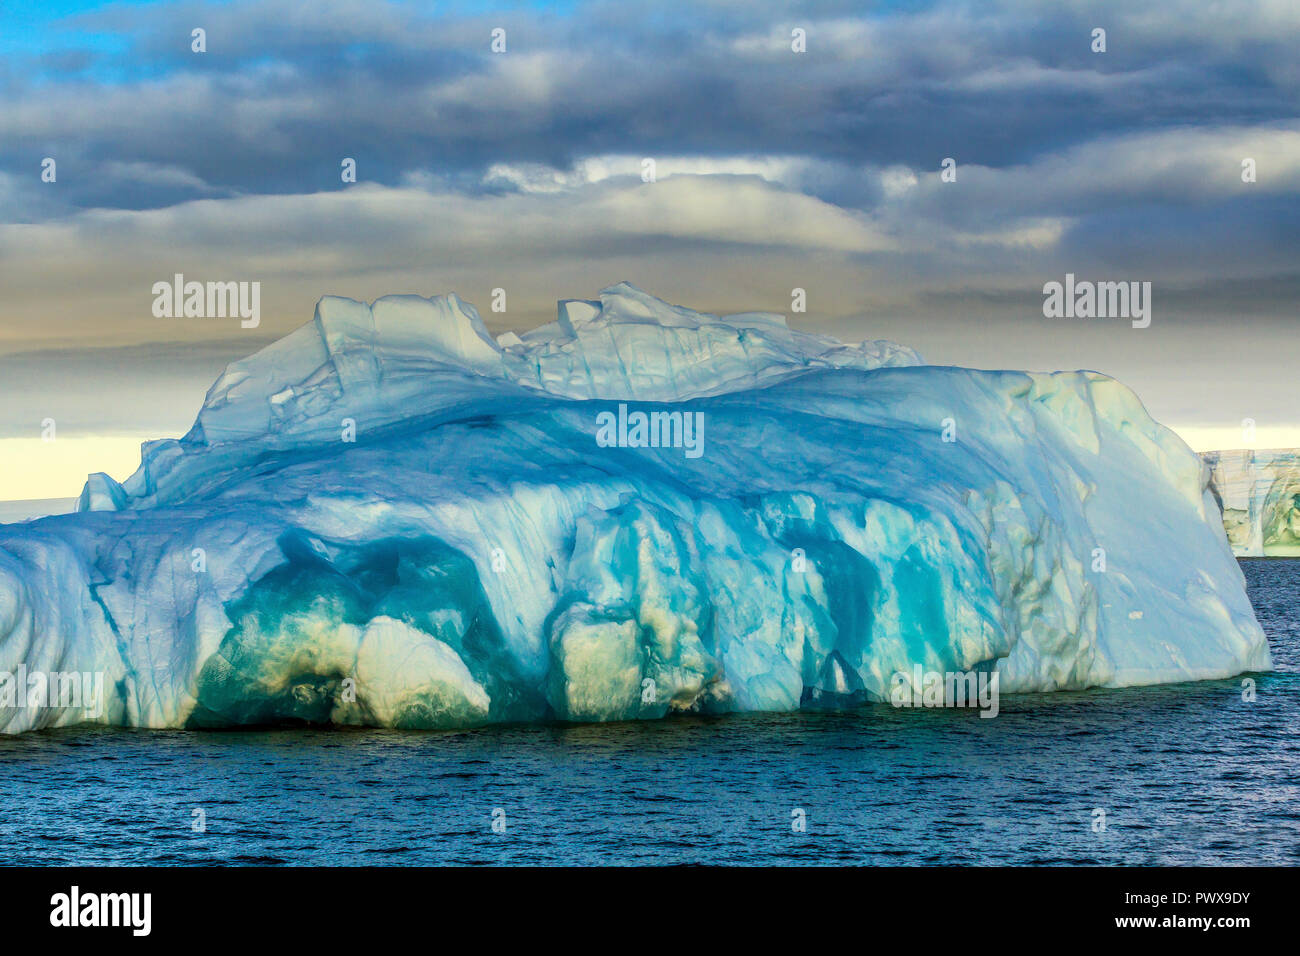 Eisberg schwimmt auf dem offenen Wasser. Sehen sie die Unterwasserwelt und die Eisschollen in der Nähe von Es. Antarktis. Stockfoto